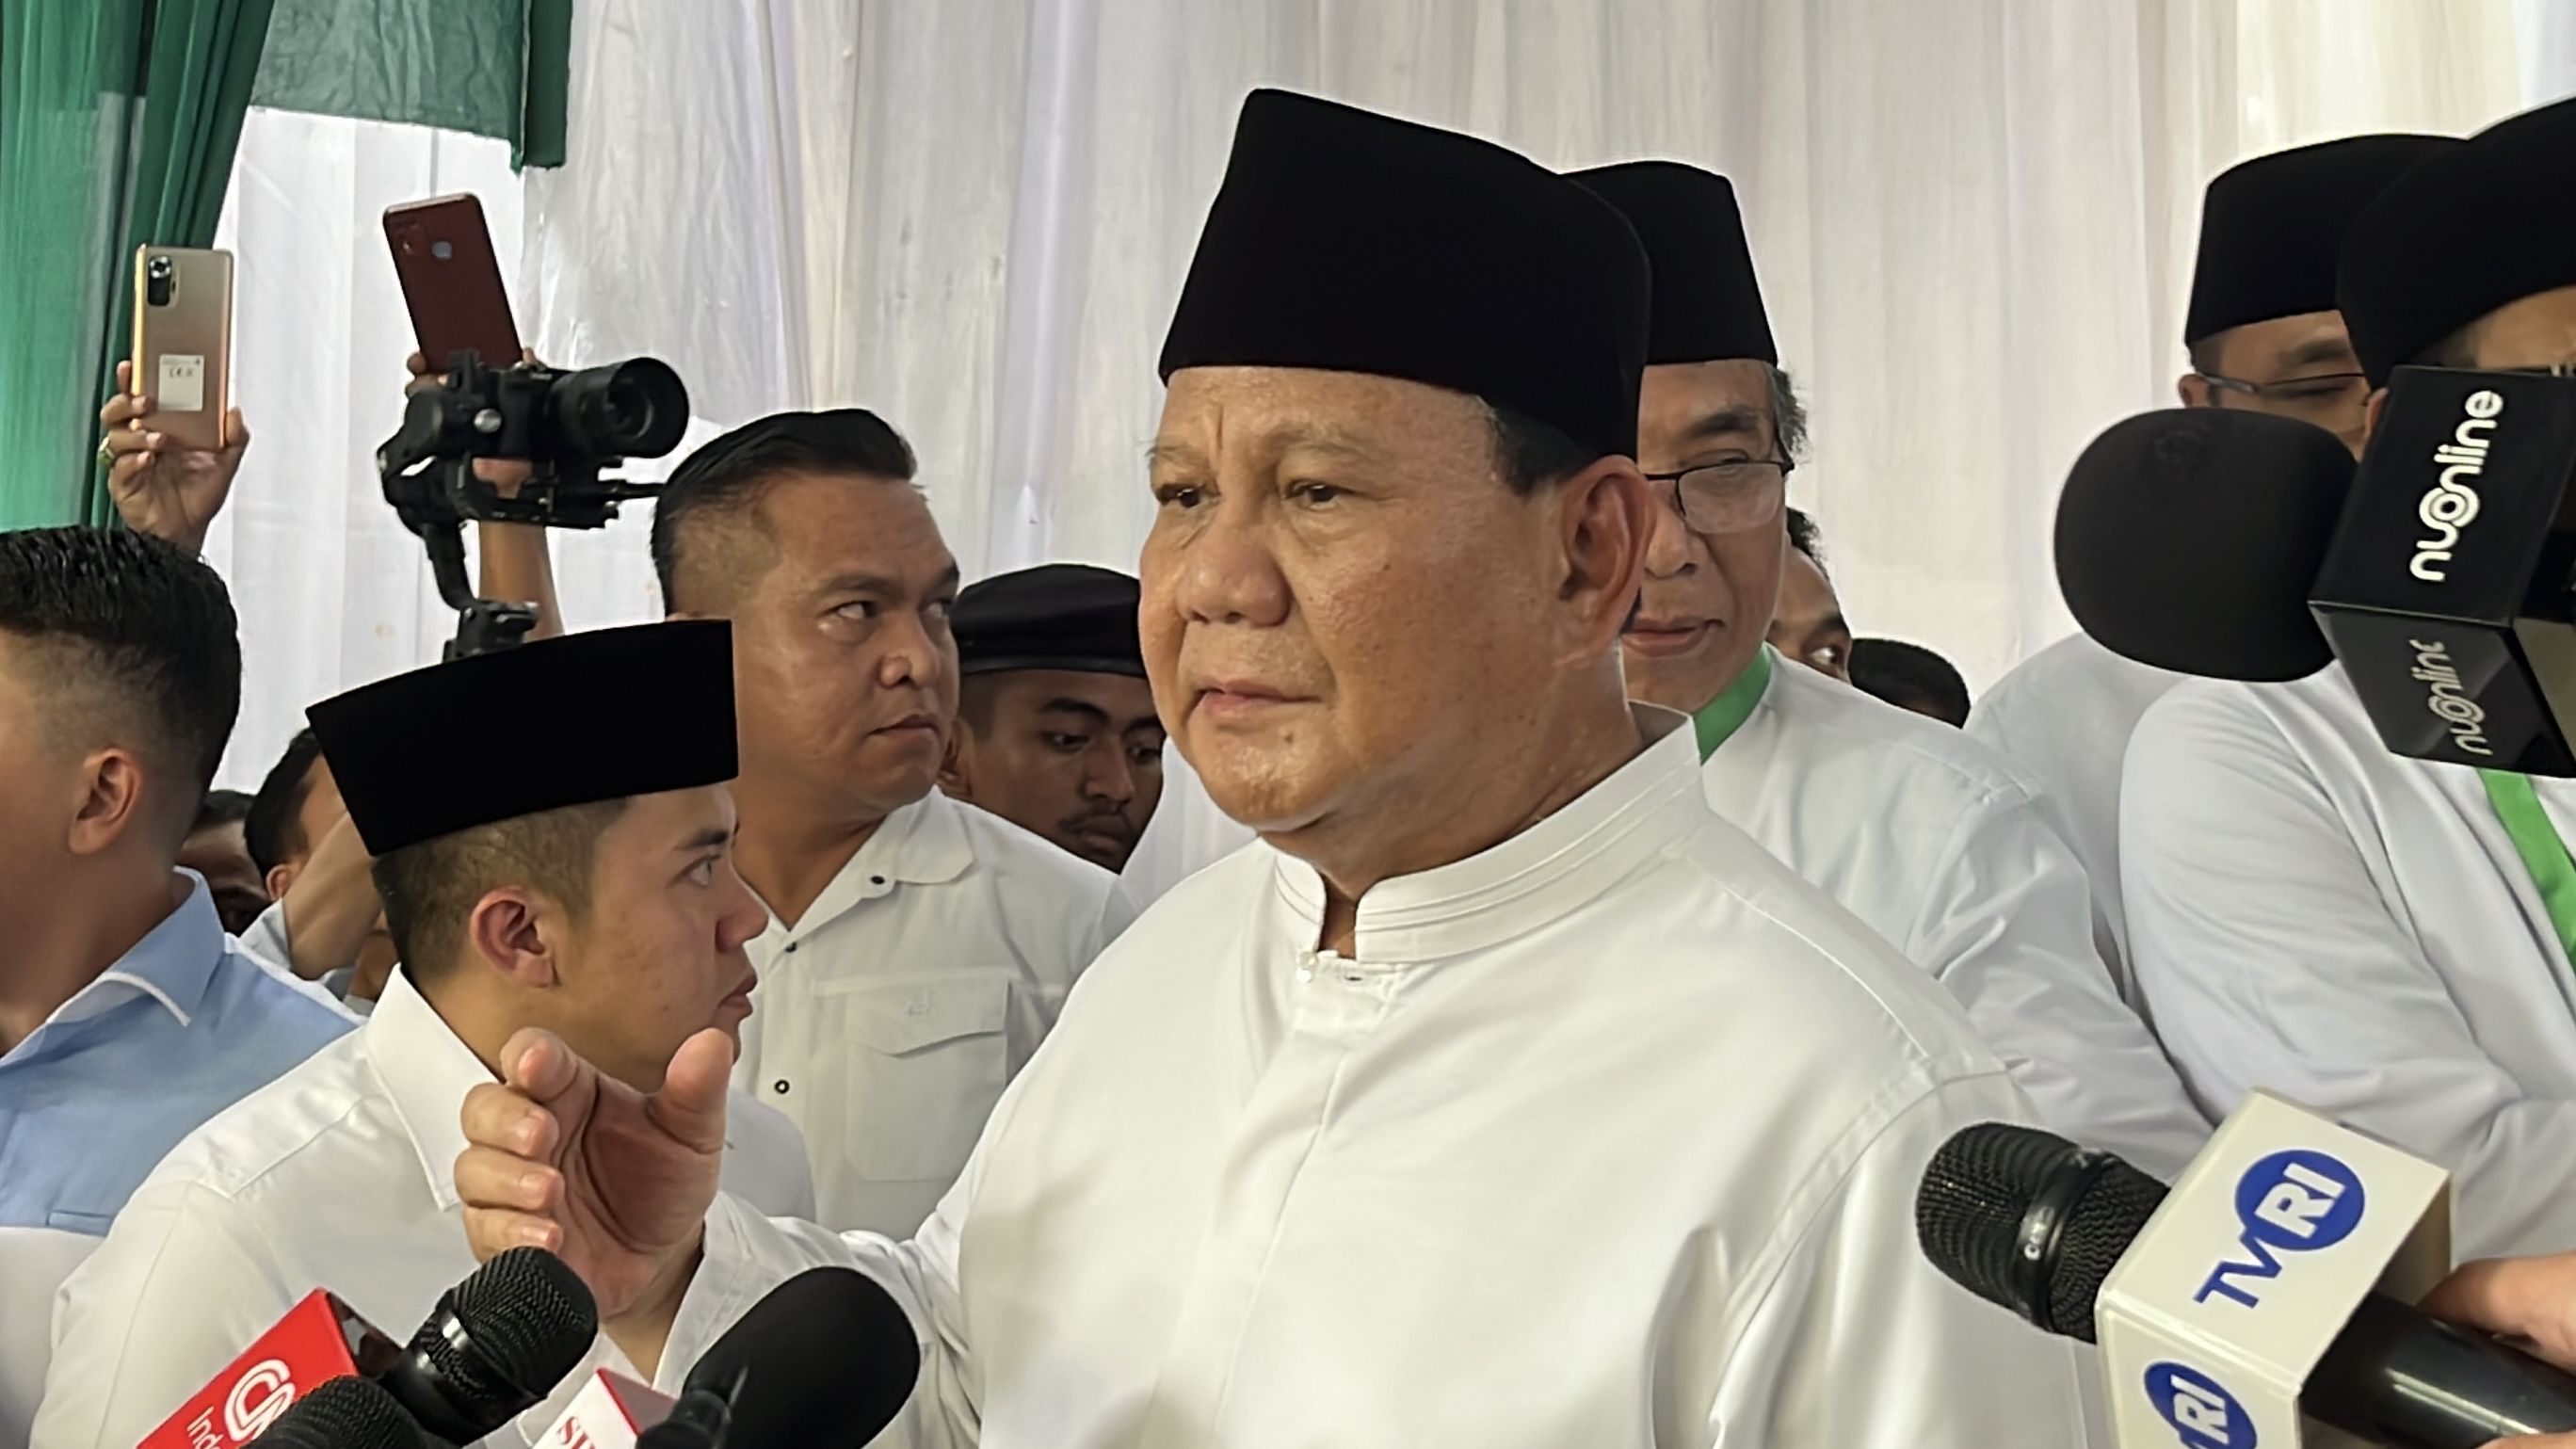 Usul Prabowo Tambah Kementerian Diharap Bukan Politik Akomodatif